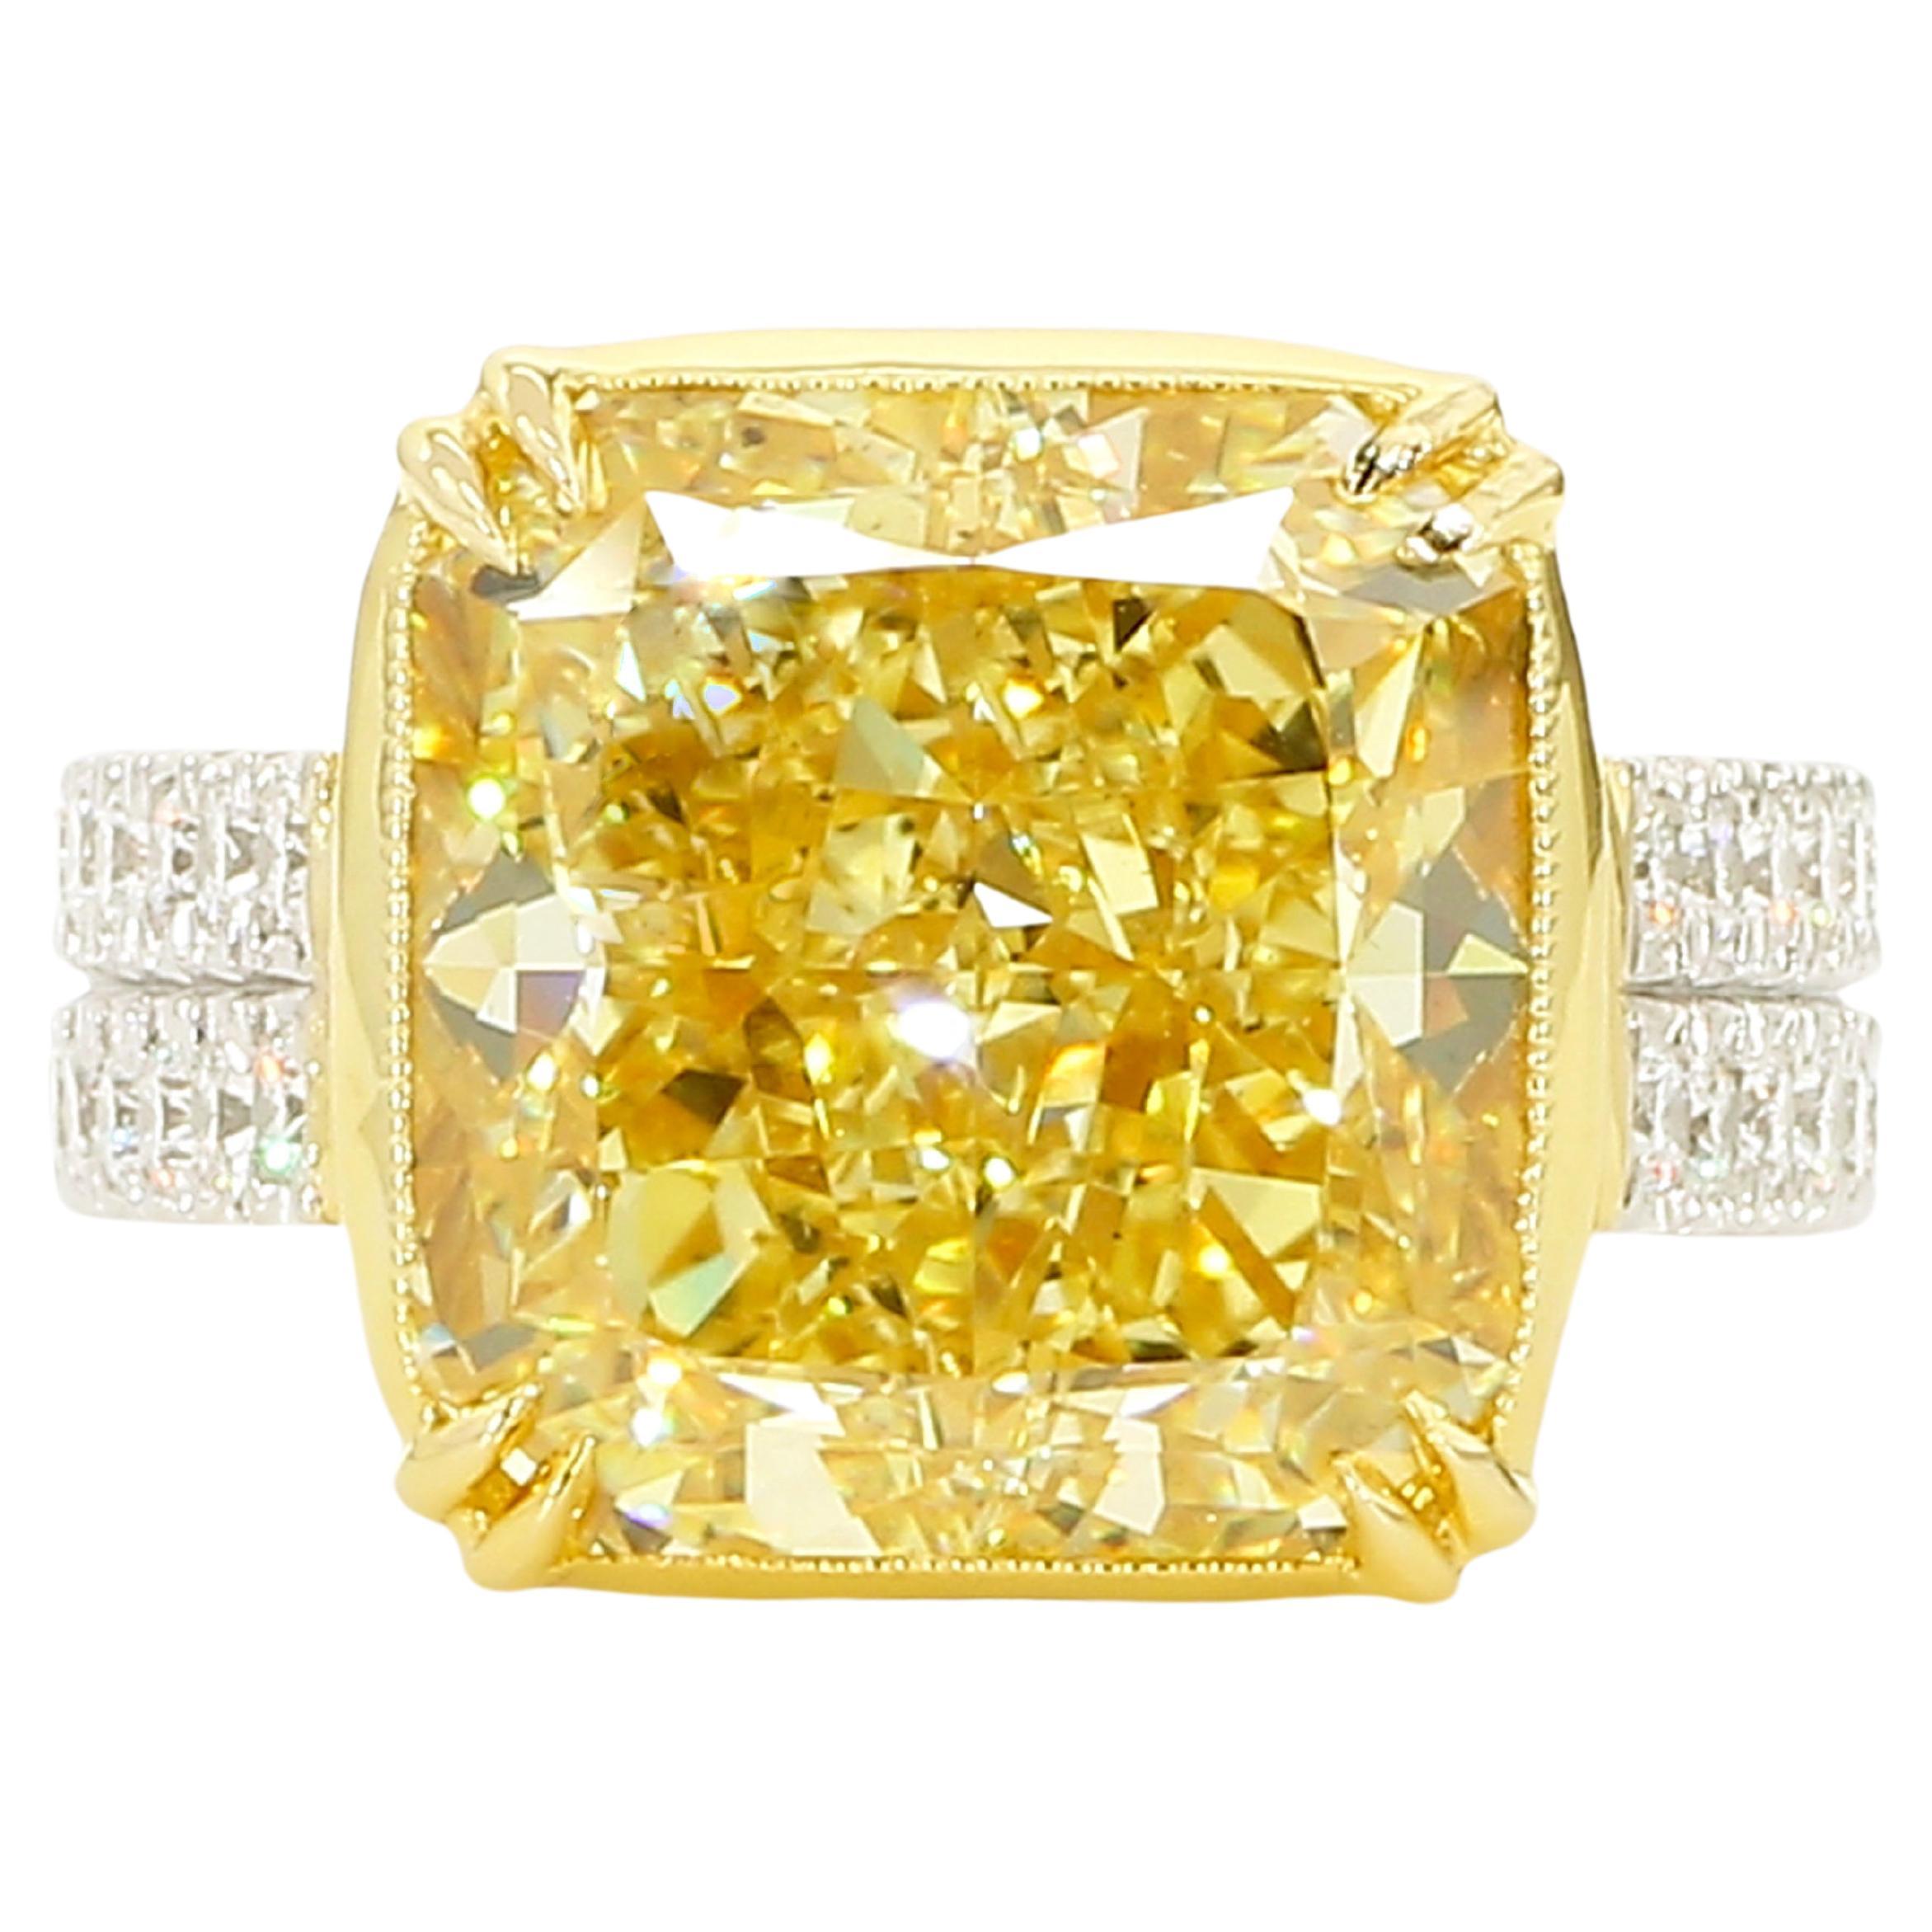 Verlobungsring aus Platin mit nur 12 Karat gelbem Fancy-Diamant, GIA-zertifiziert.